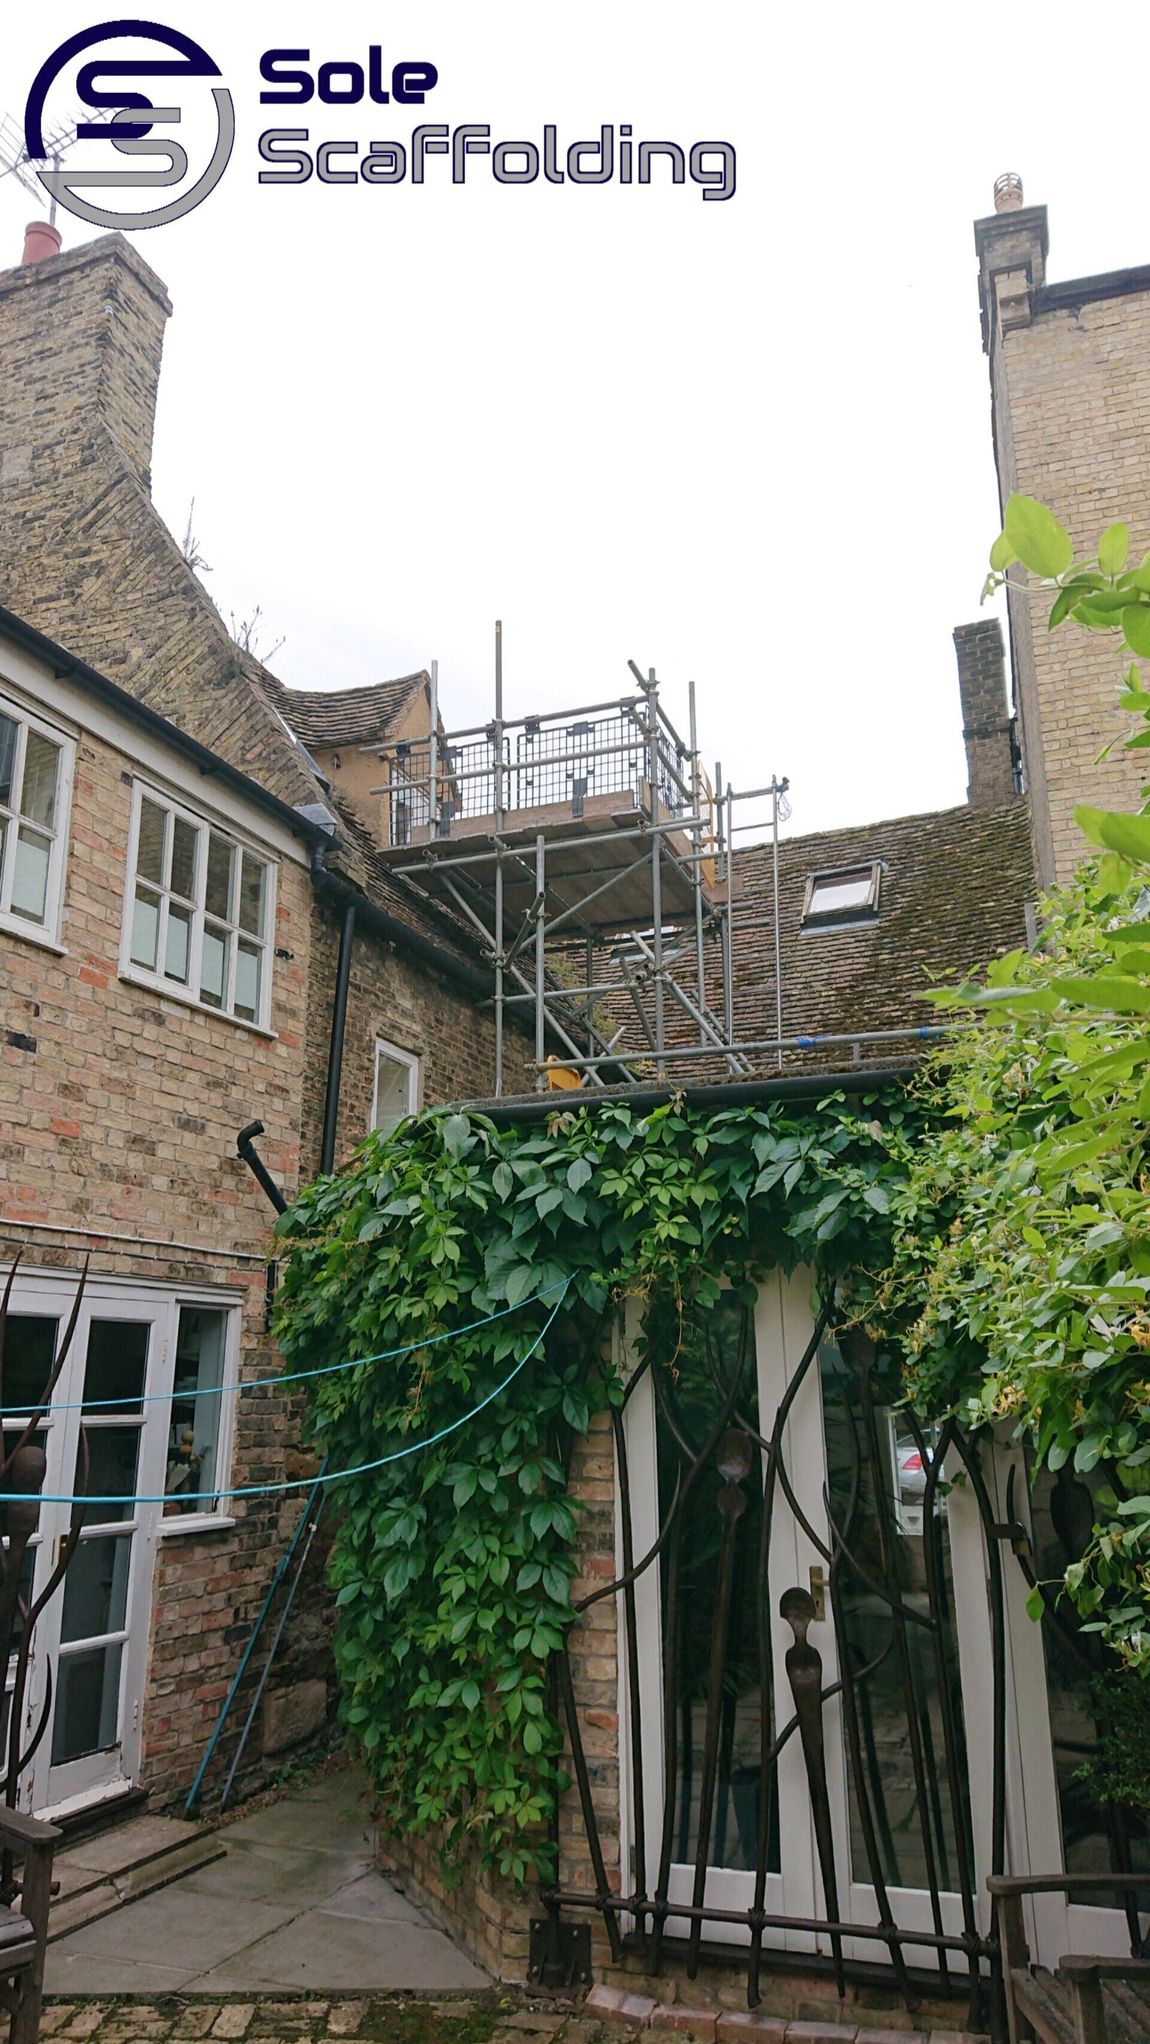 sole scaffolding - scaffold for render to dormer window in Ely